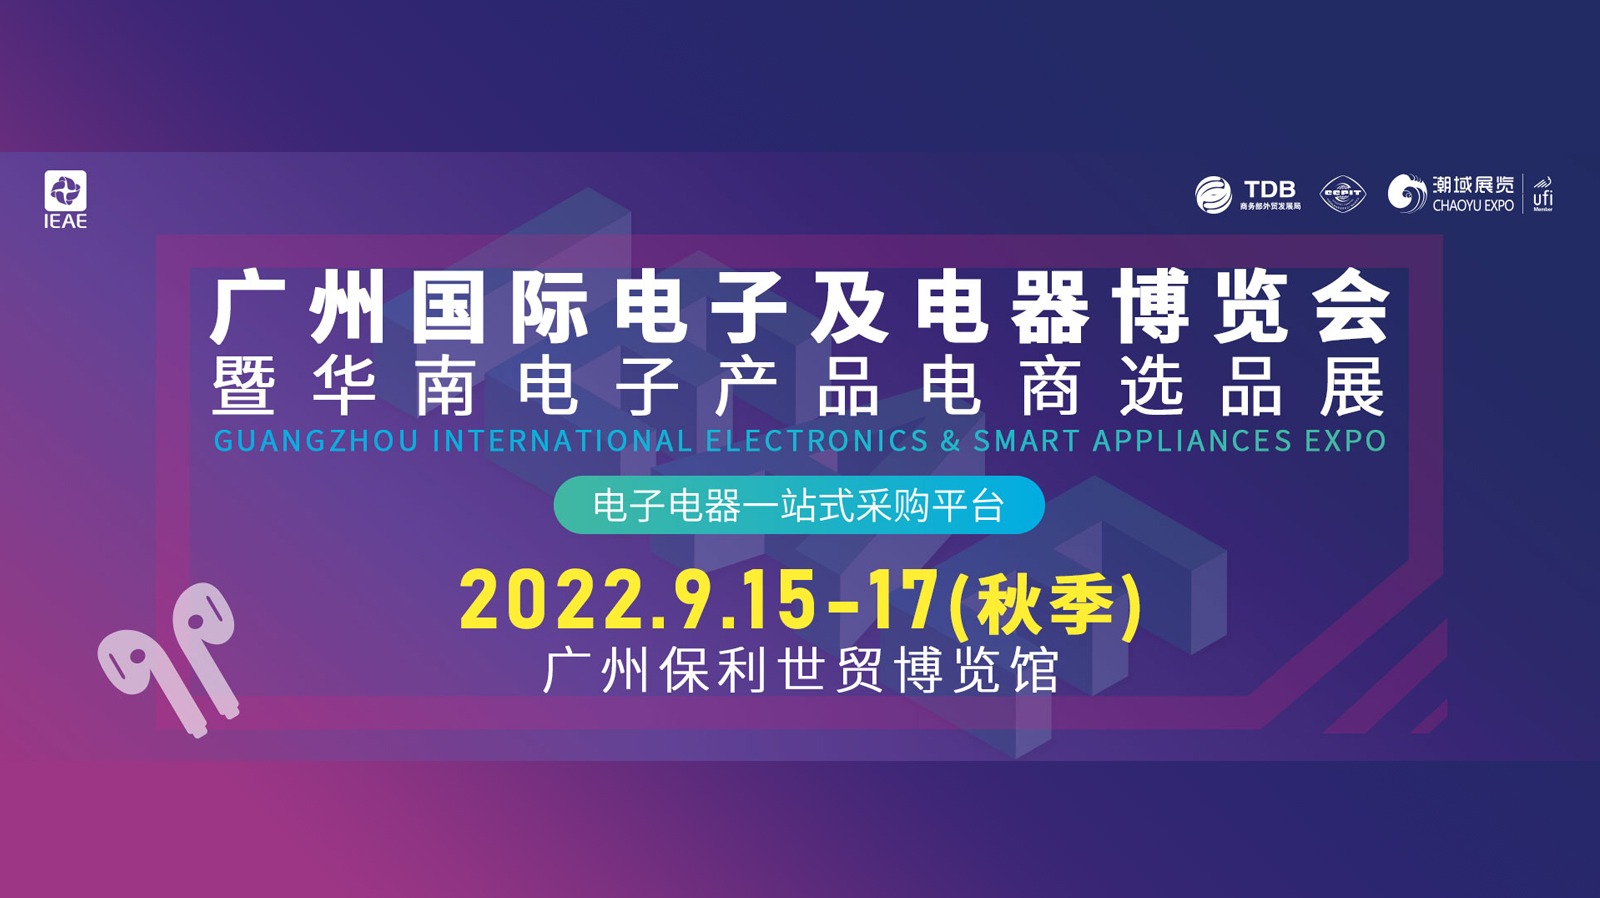 IEAE广州国际电子及电器博览会